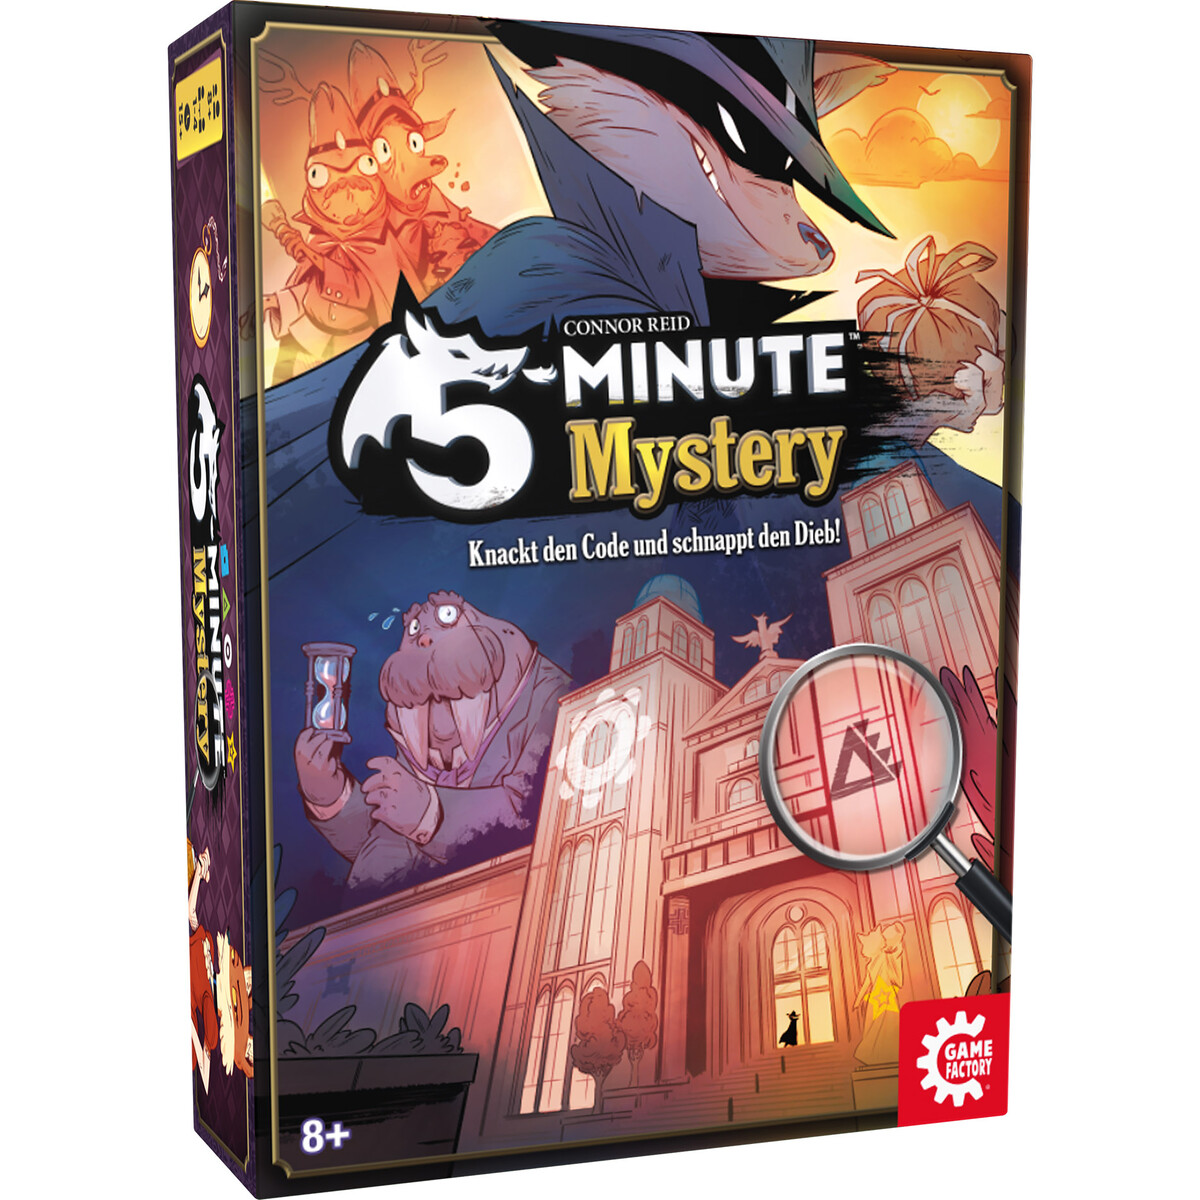 Detektivspiel 5 Minute Mystery in 3. Auflage erhältlich